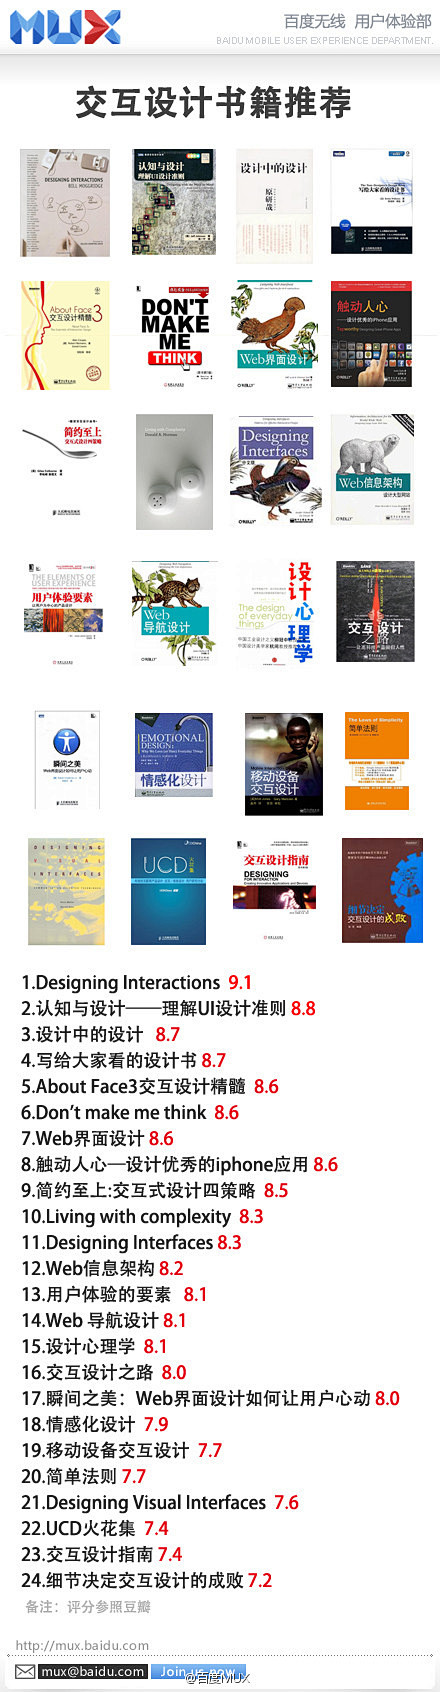 汇聚评分最高的24部交互设计相关书籍